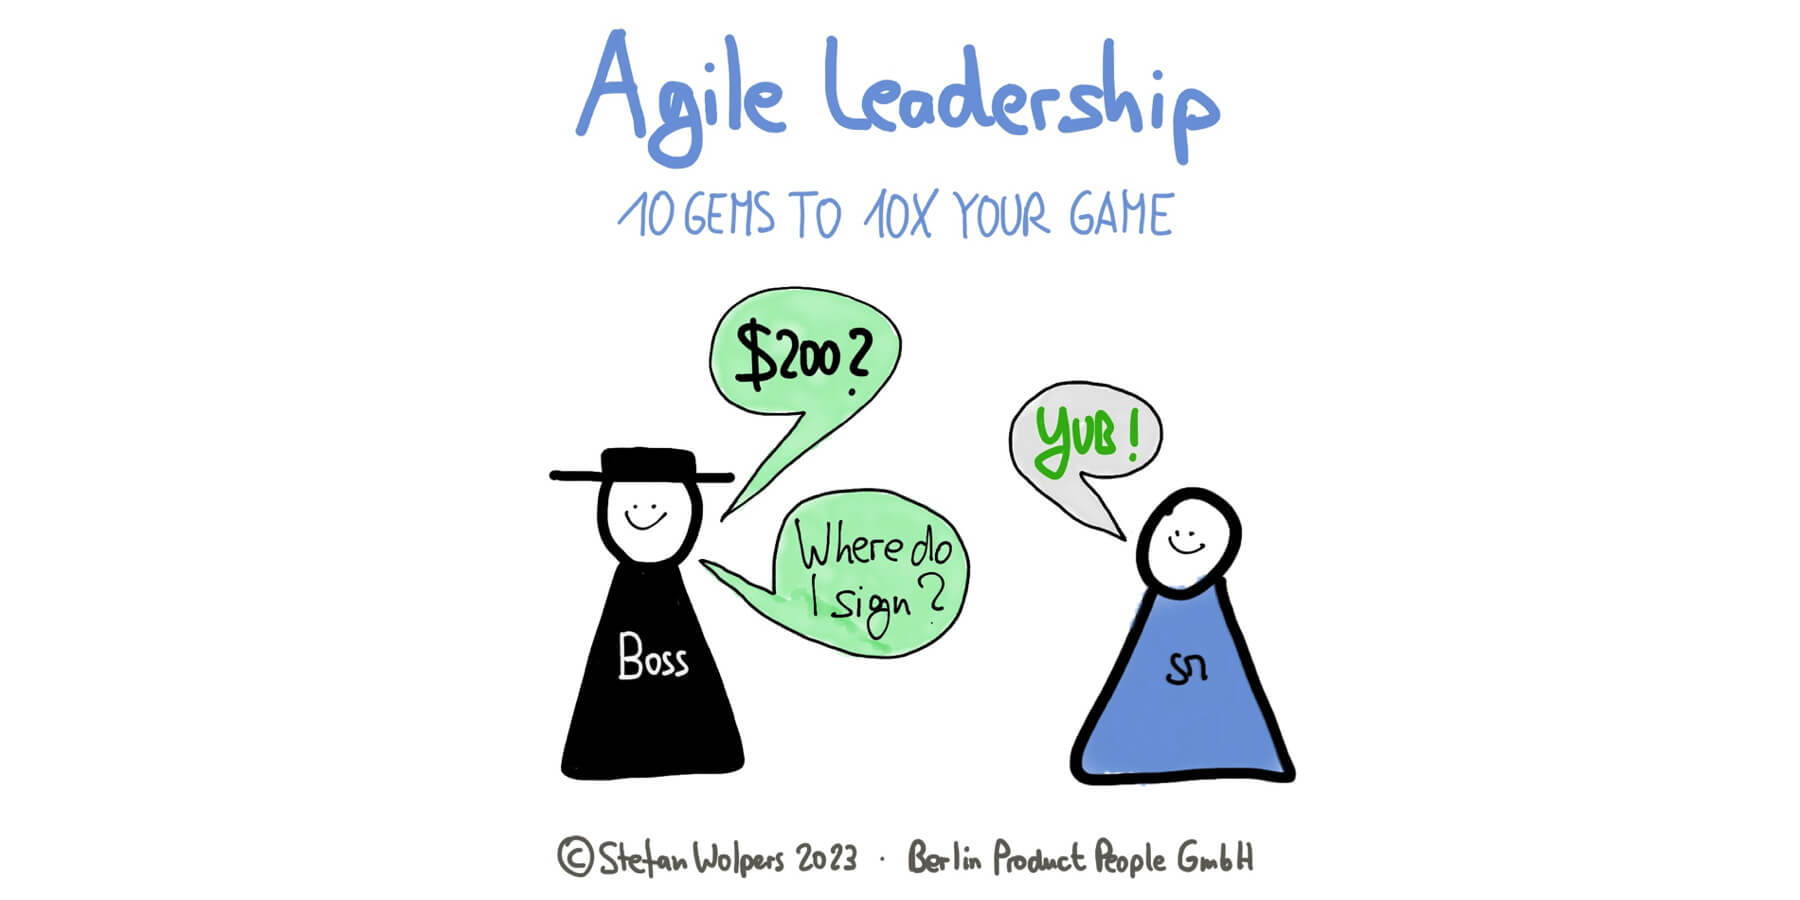 Agile Führung: 10 verborgene Juwelen für eine 10X Steigerung Ihrer Führungsqualitäten — Berlin-Product-People.com